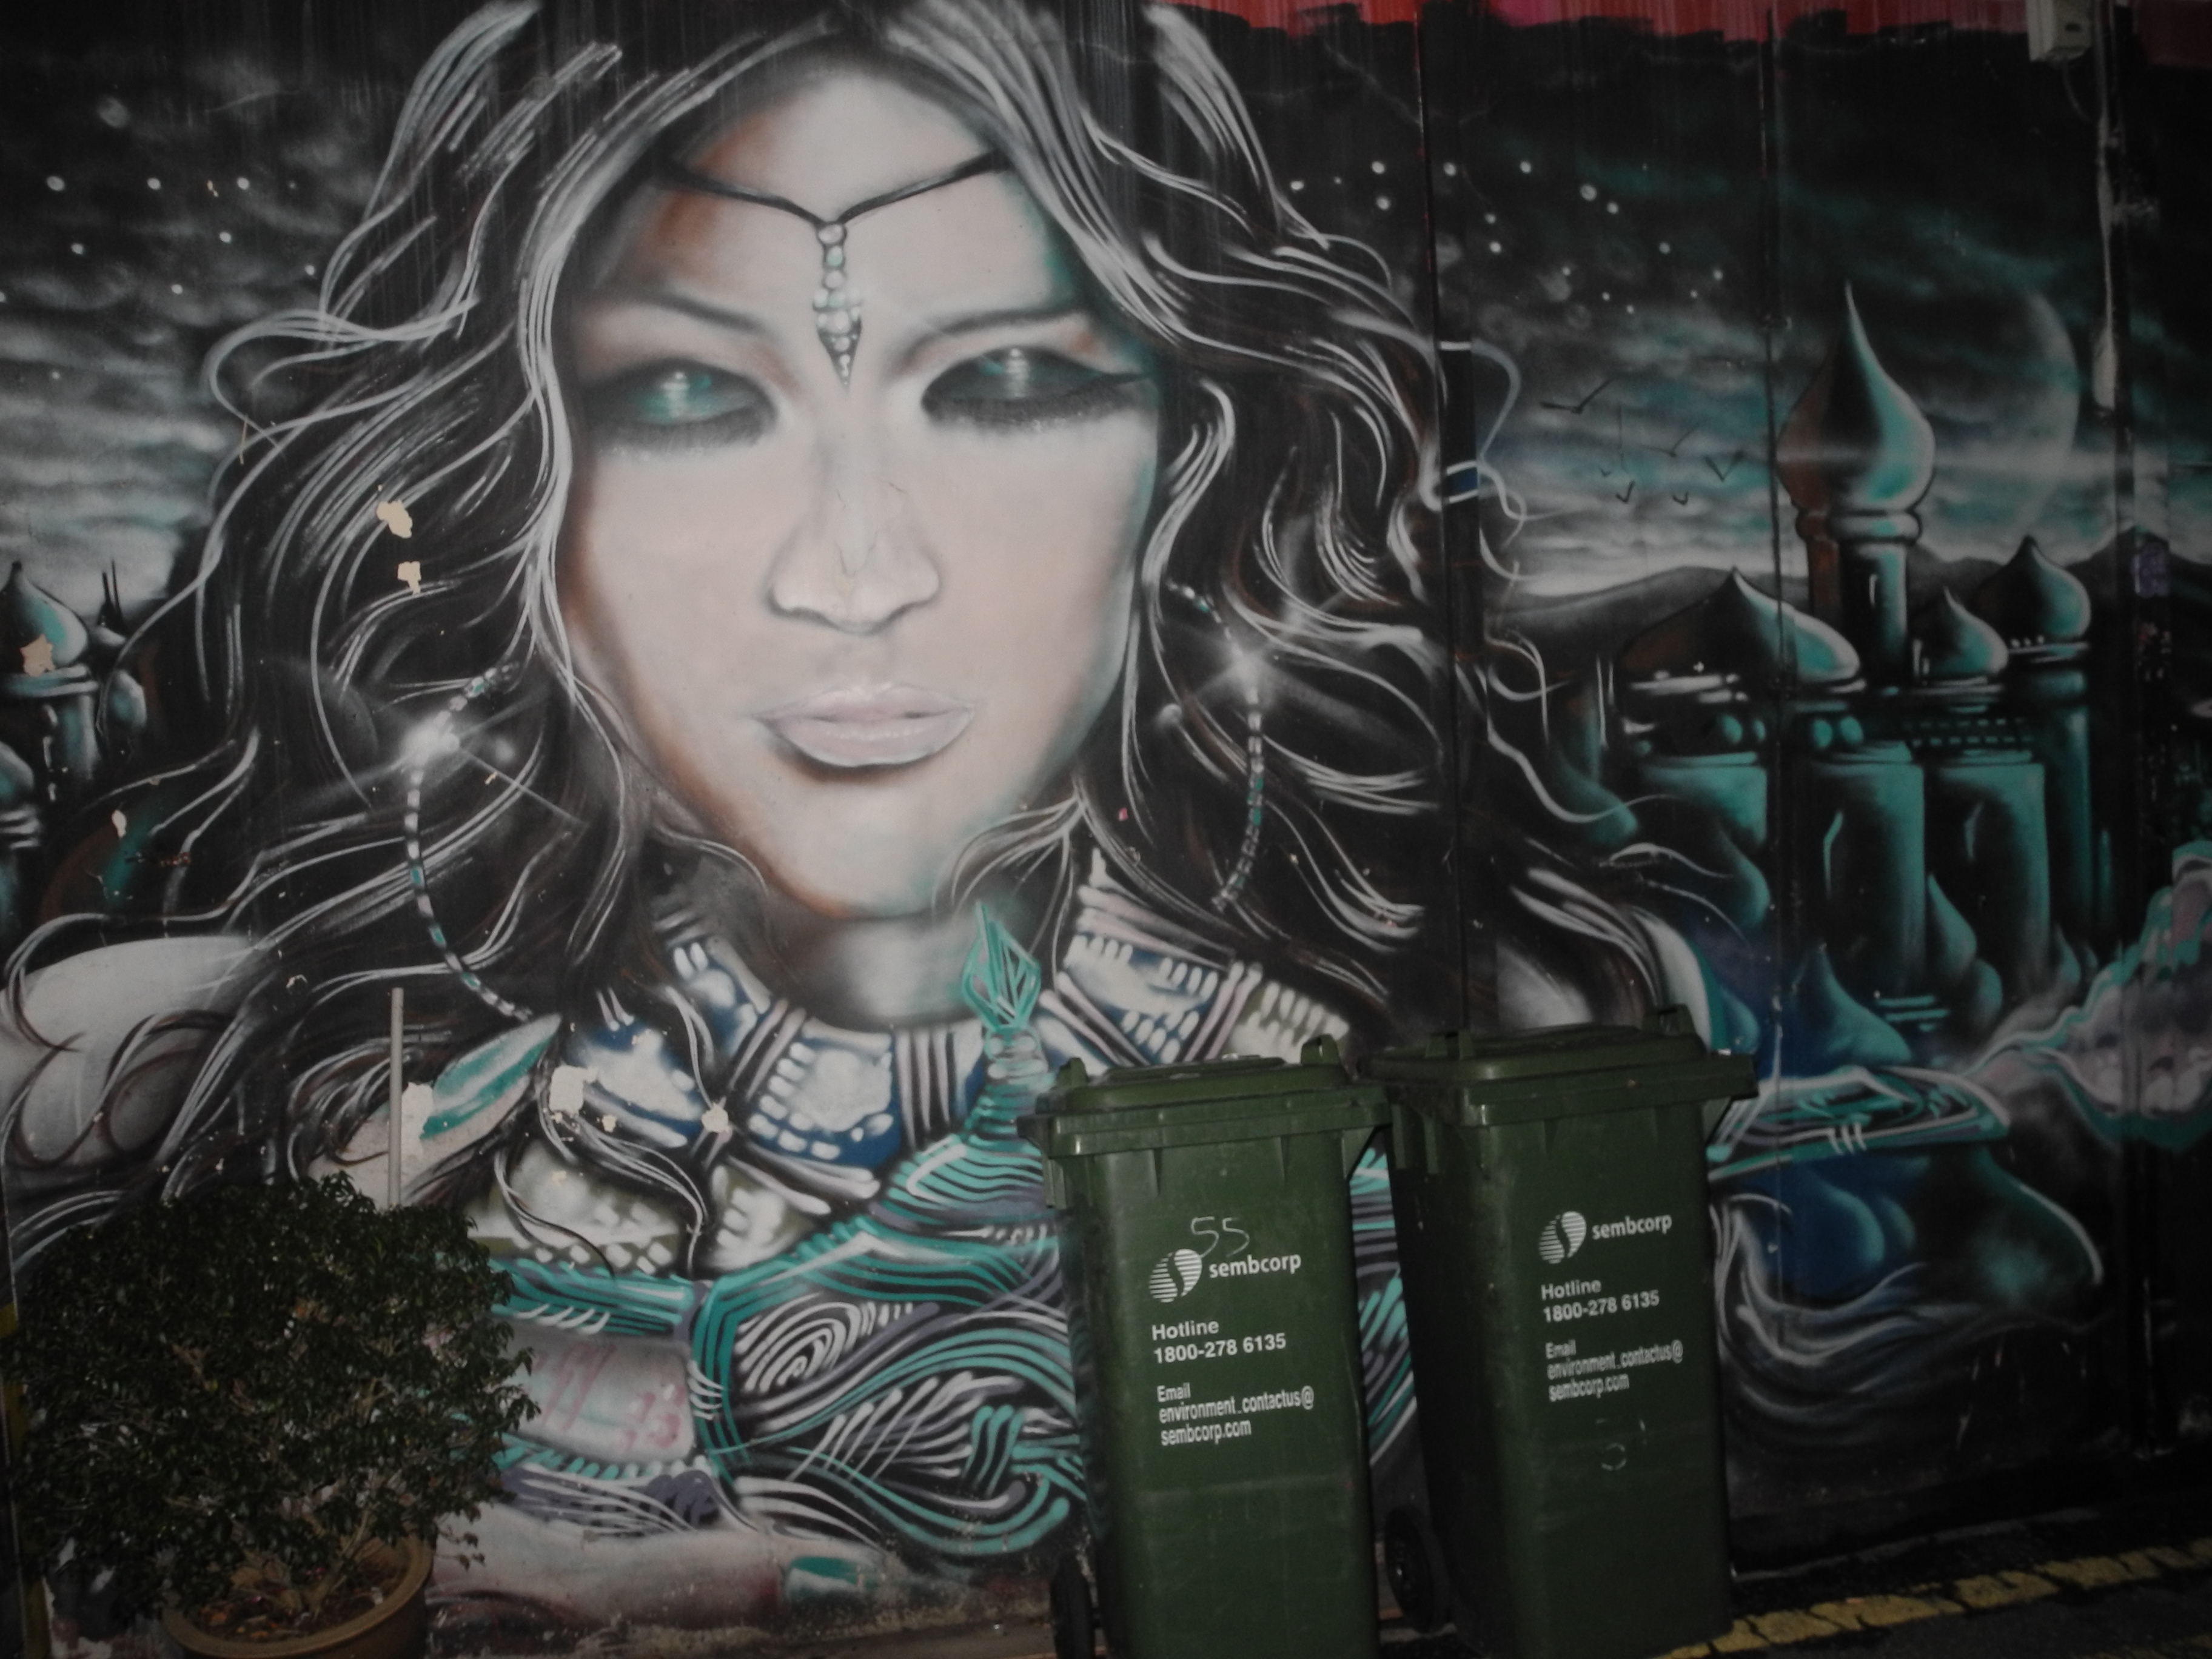 "Graffiti" in Singapore